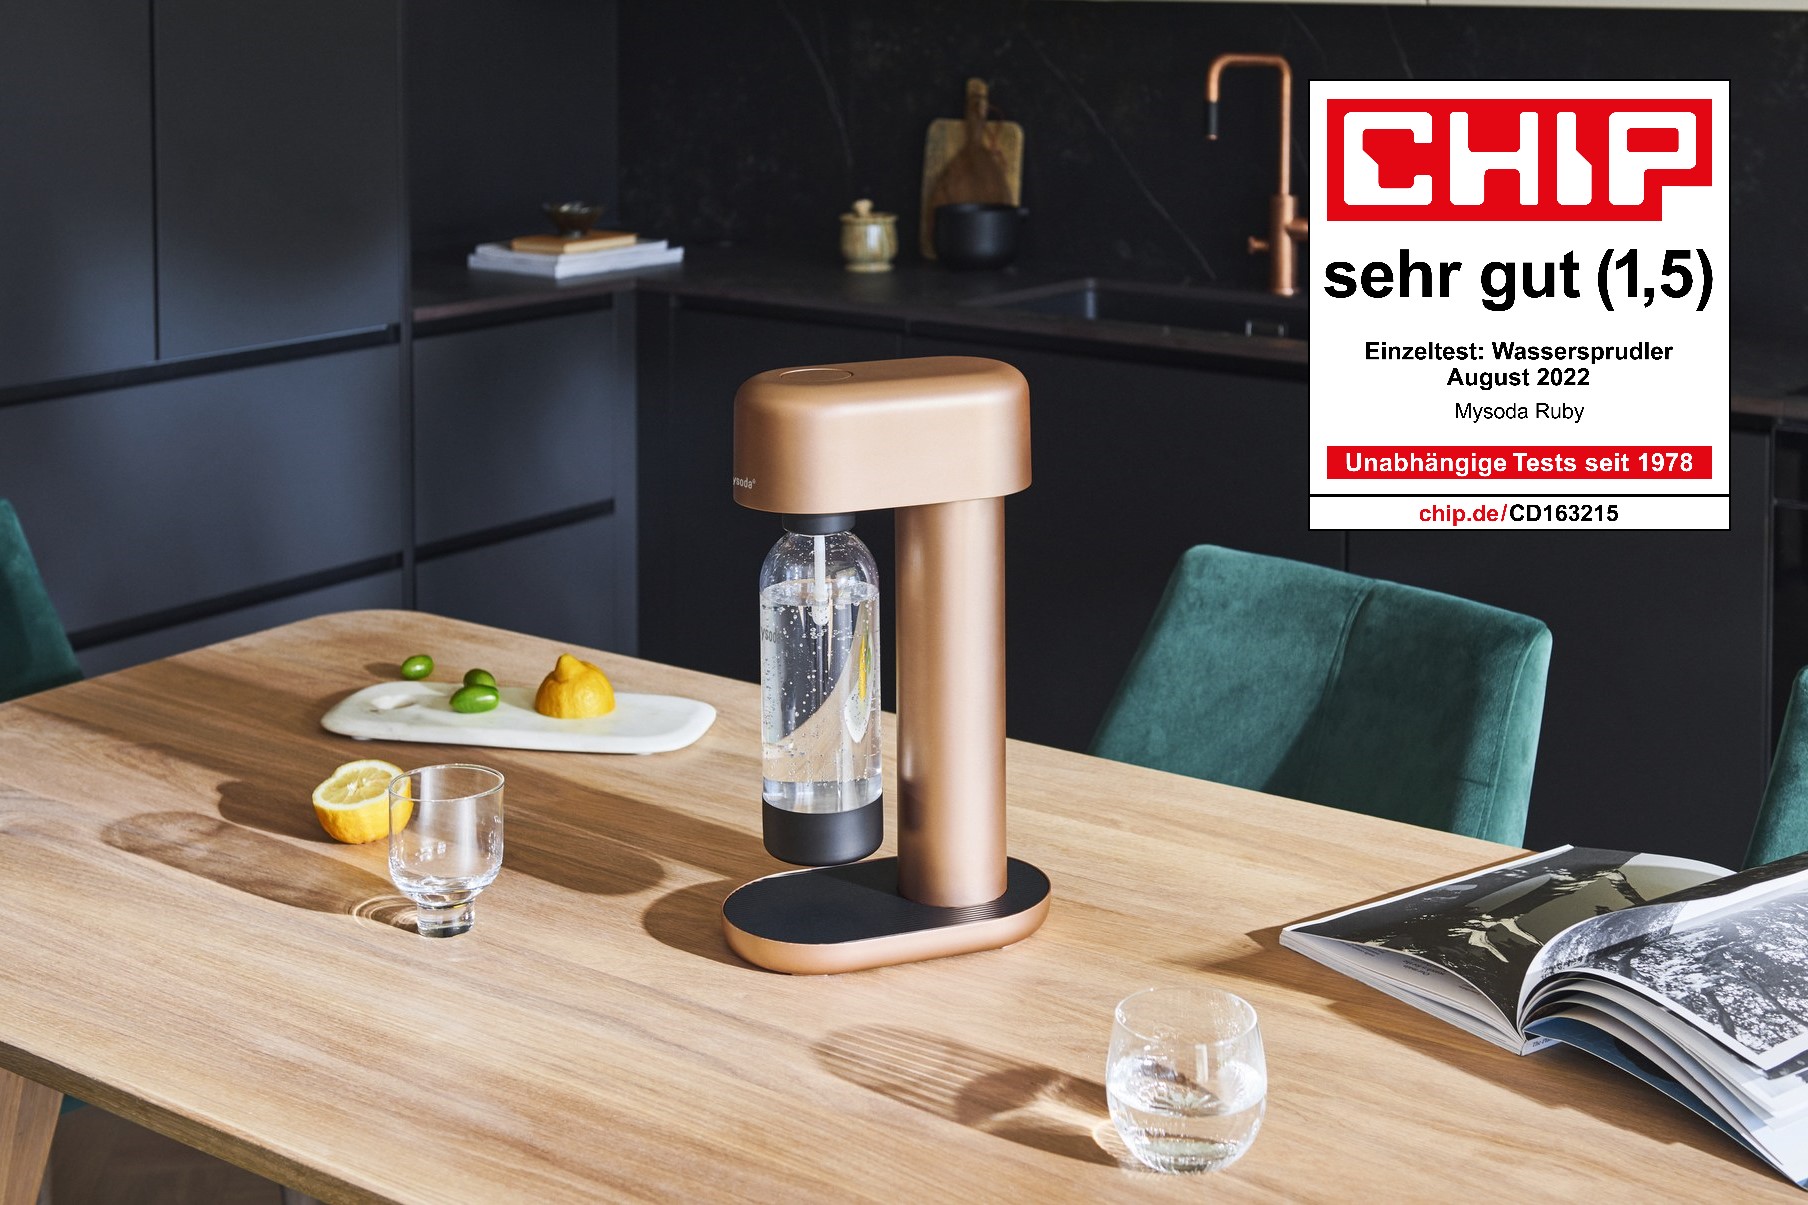 Kupferfarbener Ruby Wassersprudler auf dem Küchentisch und das CHIP Logo und Testergebnis